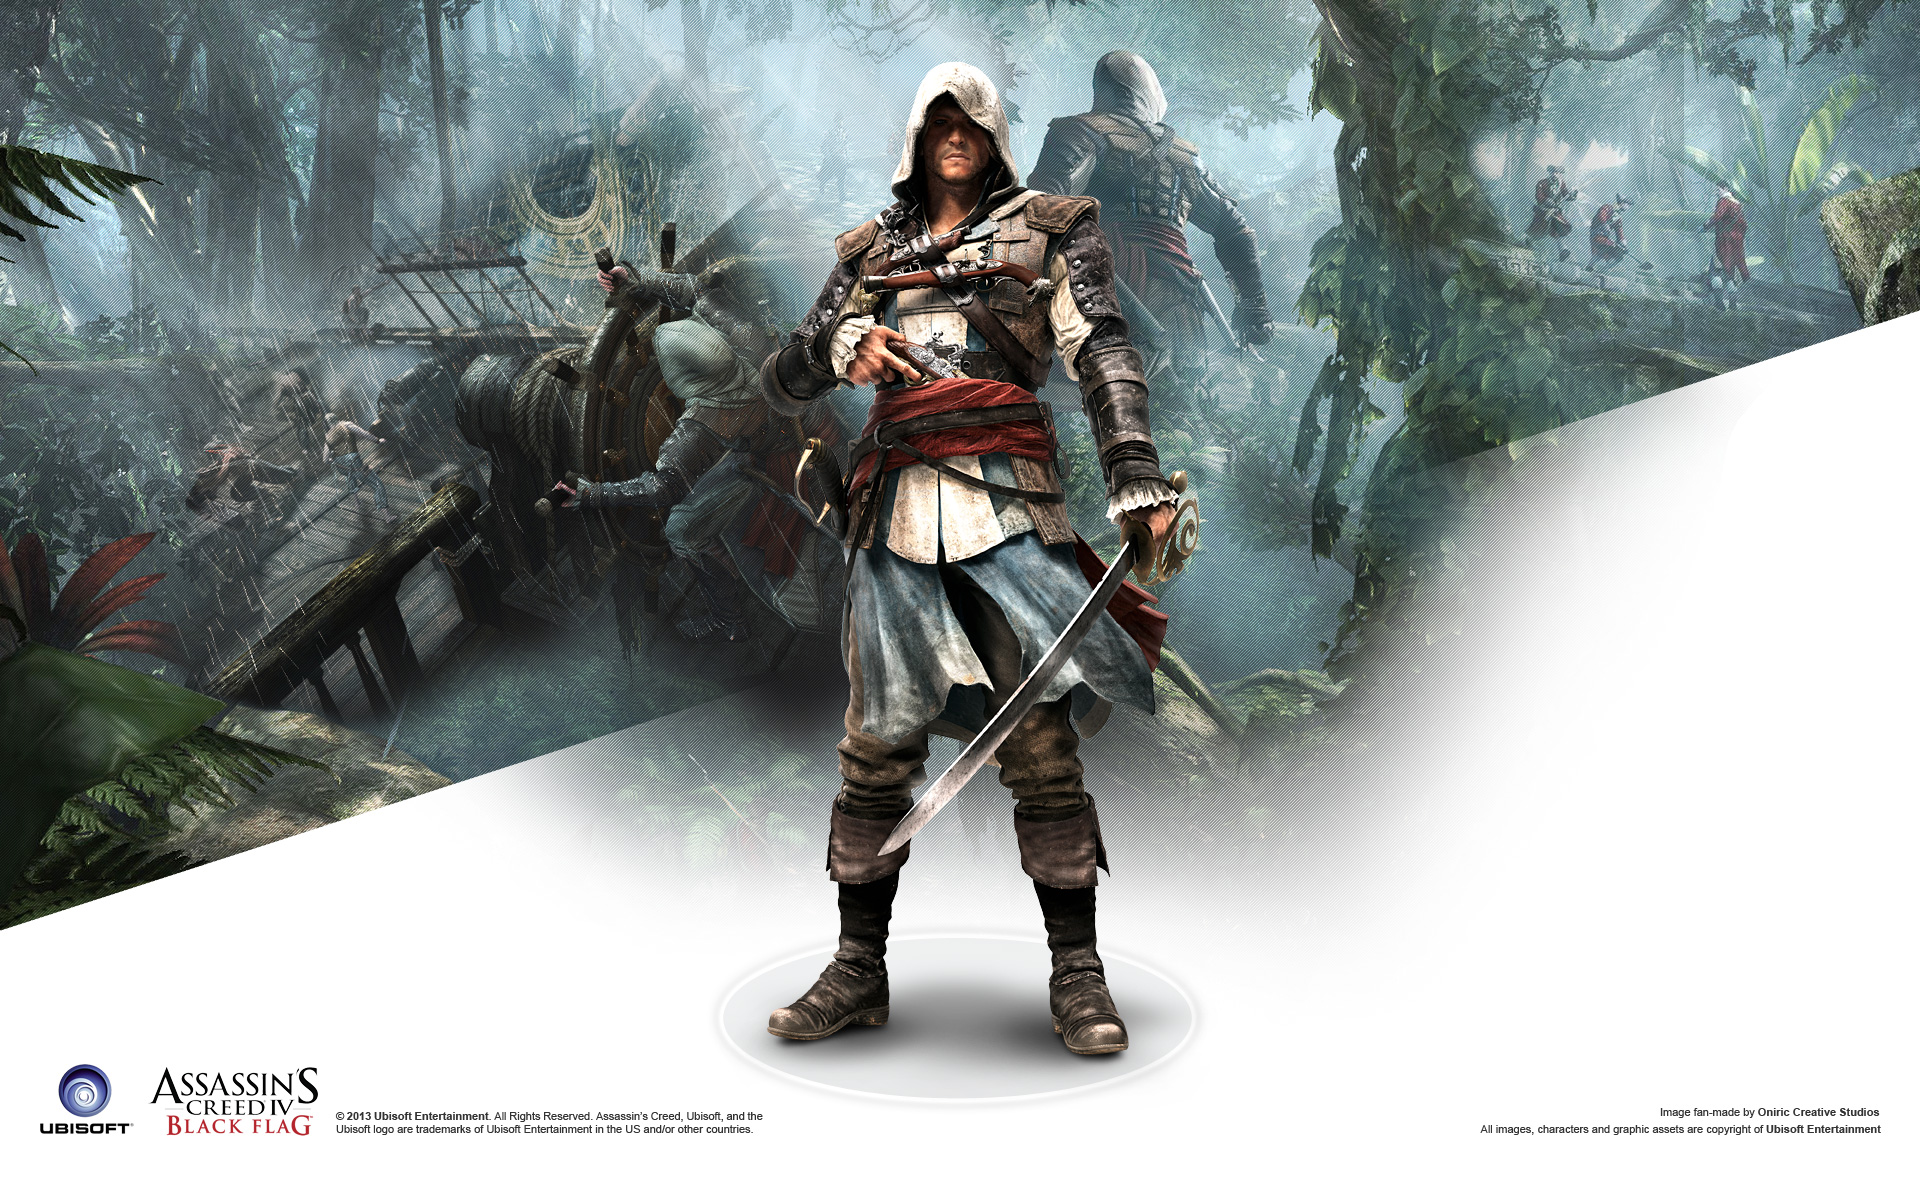 Assassins Creed 4 Black Flag wallpapers or desktop backgrounds